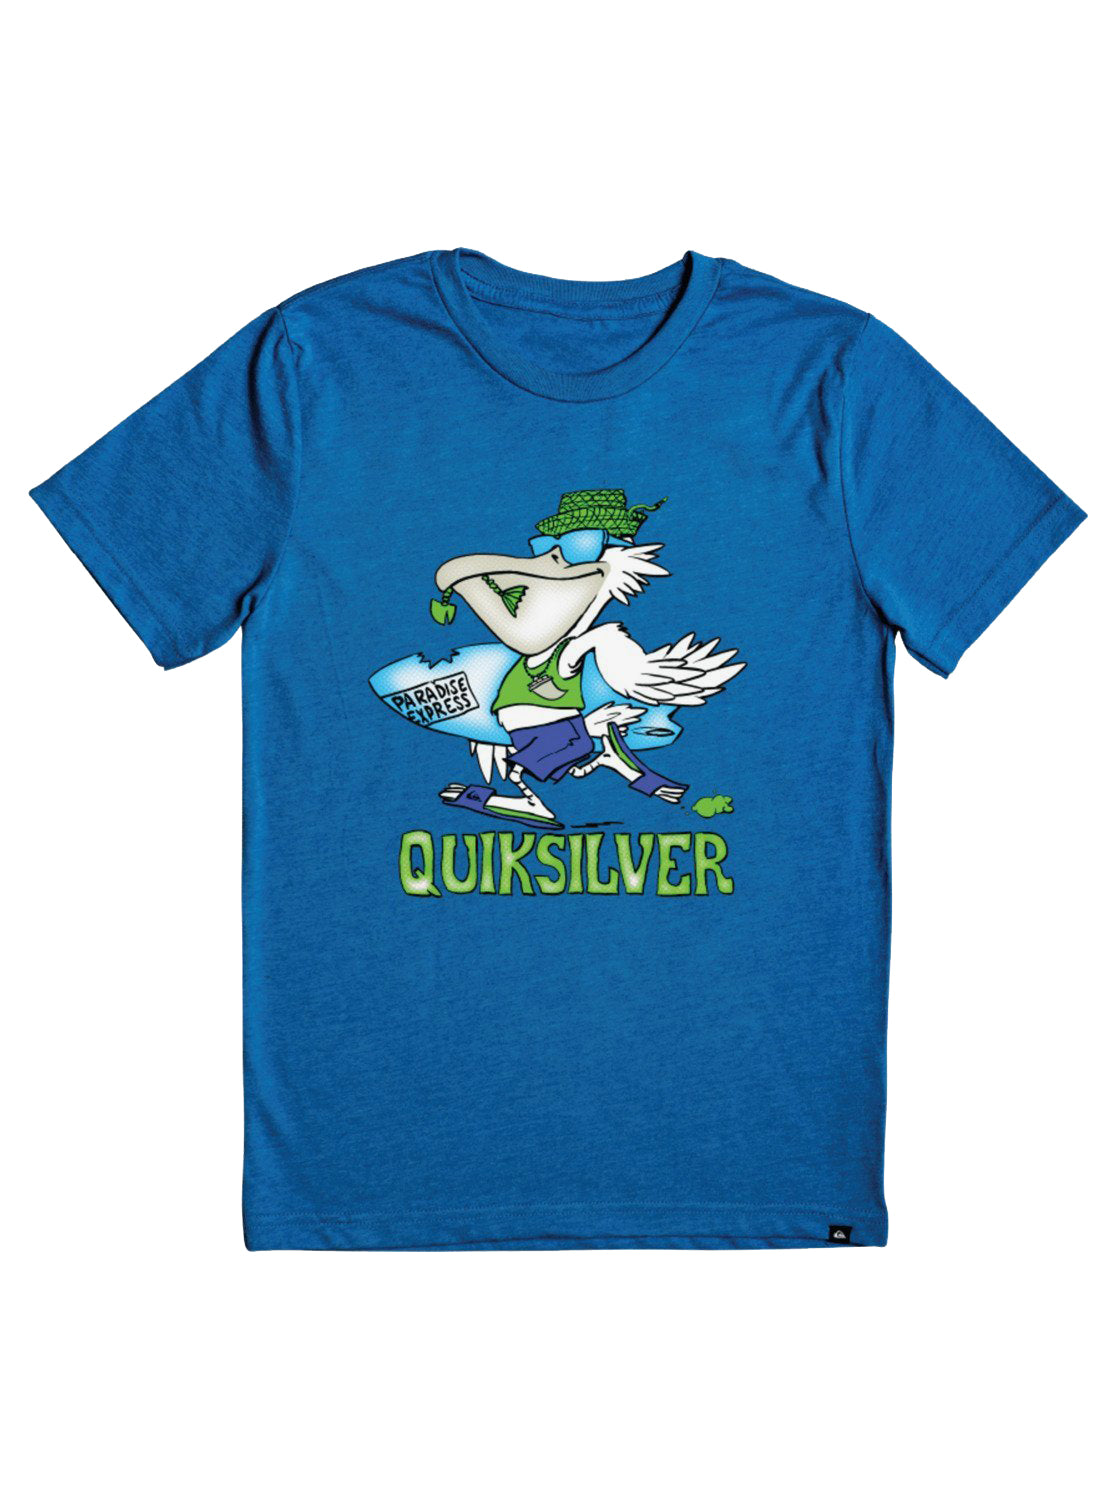 Quiksilver Kids Pelican Shred SS Tee BQVH 2